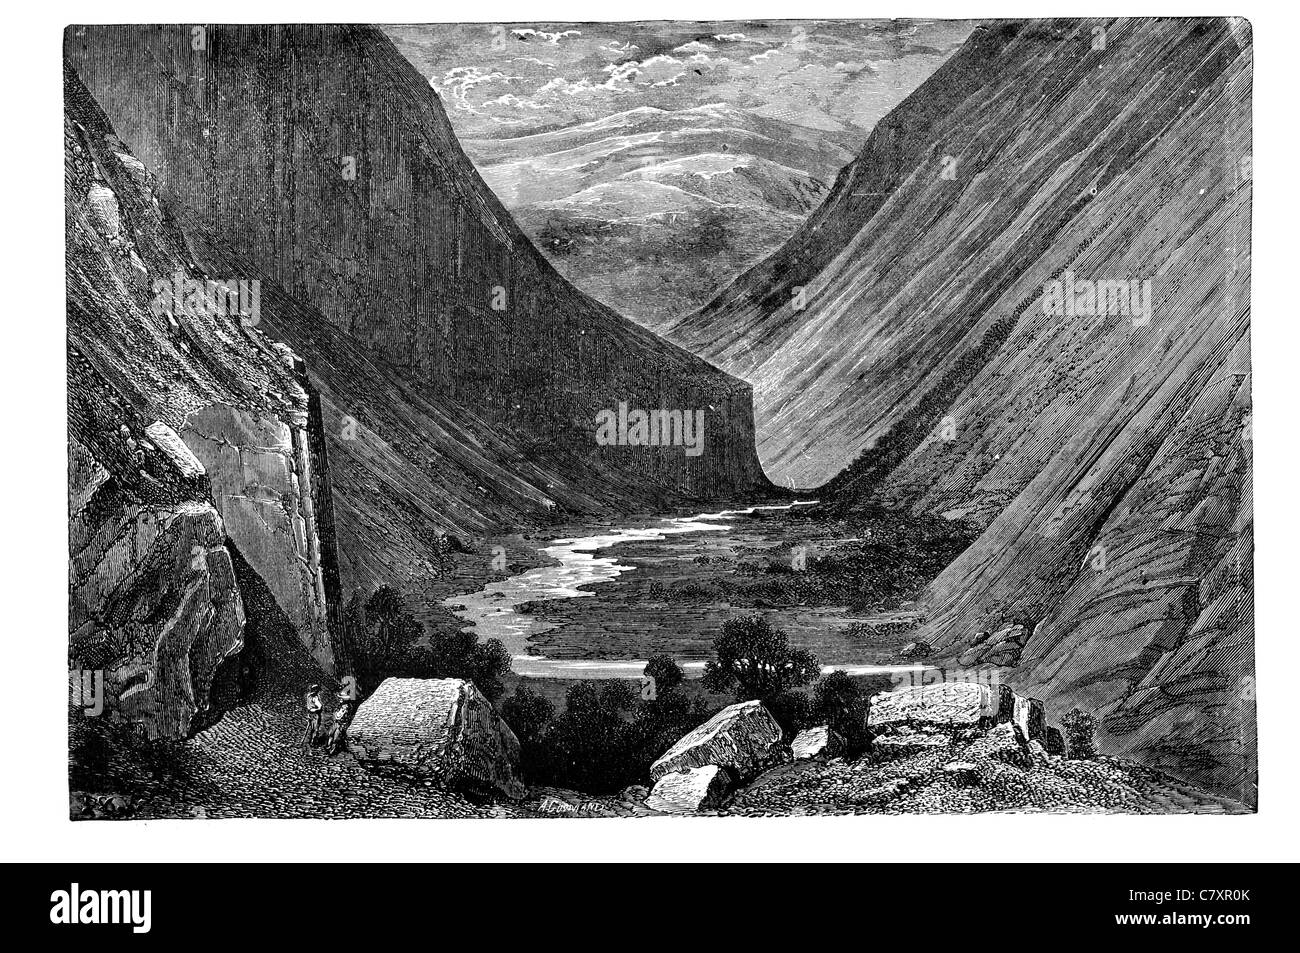 La vallée supérieure de la Norvège Heimdal étude géologique la géologie du paysage rock formation géographie falaises gorges de la rivière falaise nature flux Banque D'Images